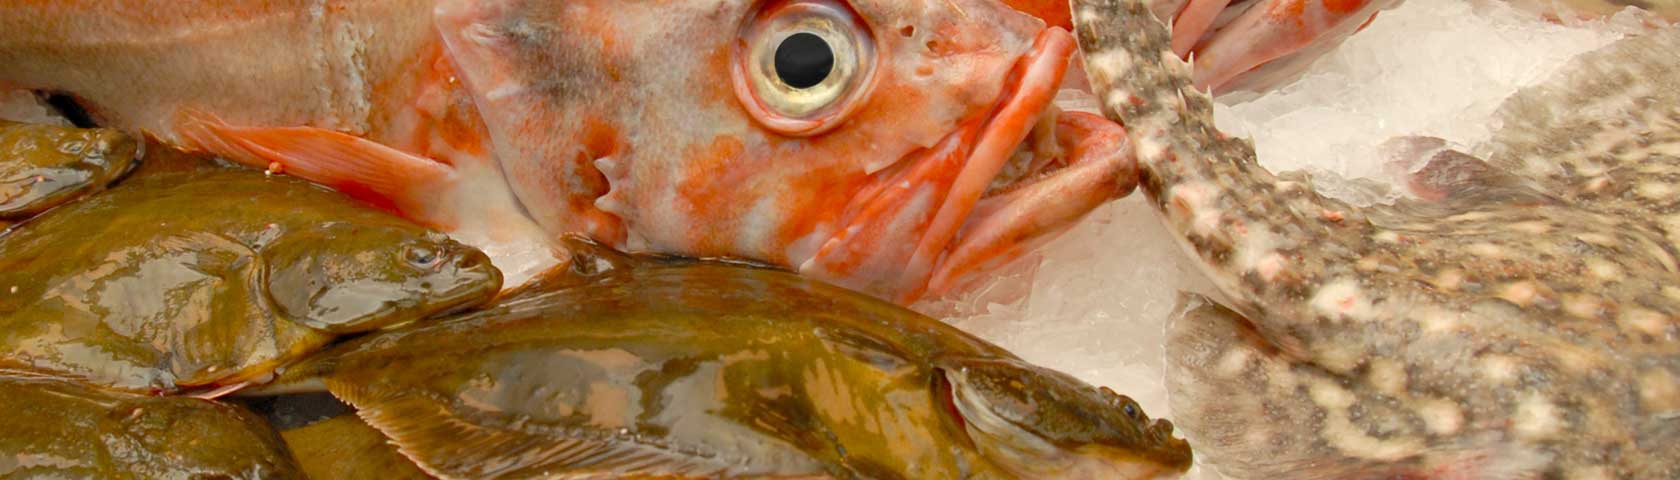 Edgar Madsen - Ihr professioneller Lieferant von frischem und verarbeitetem Fisch